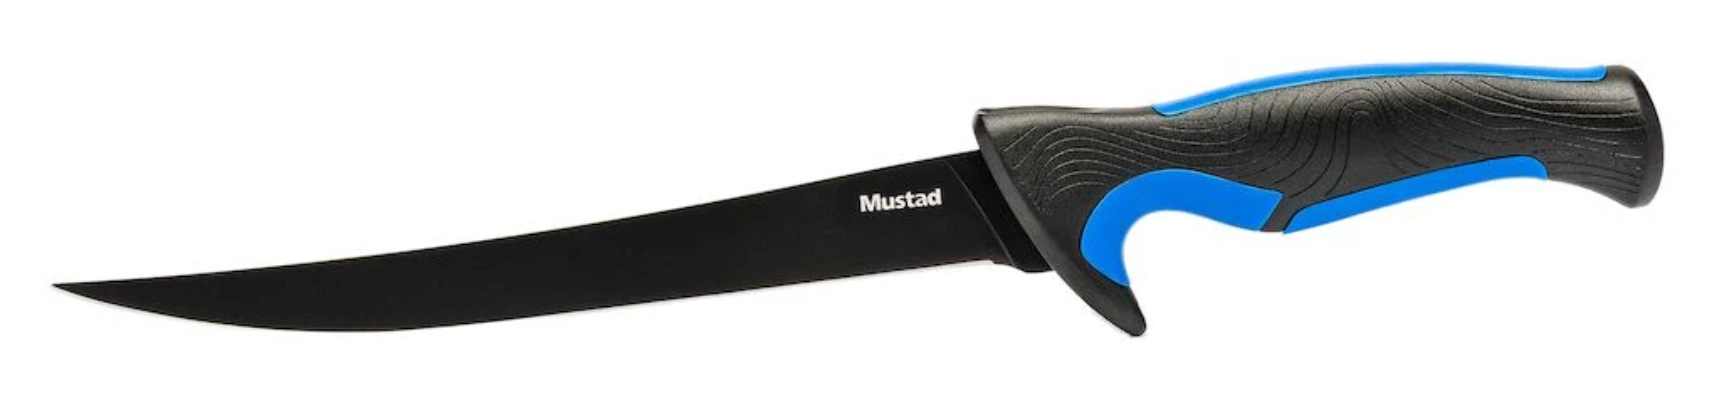 Mustad 3-Piece Fillet & Boning Knife Kit w/ Sharpener